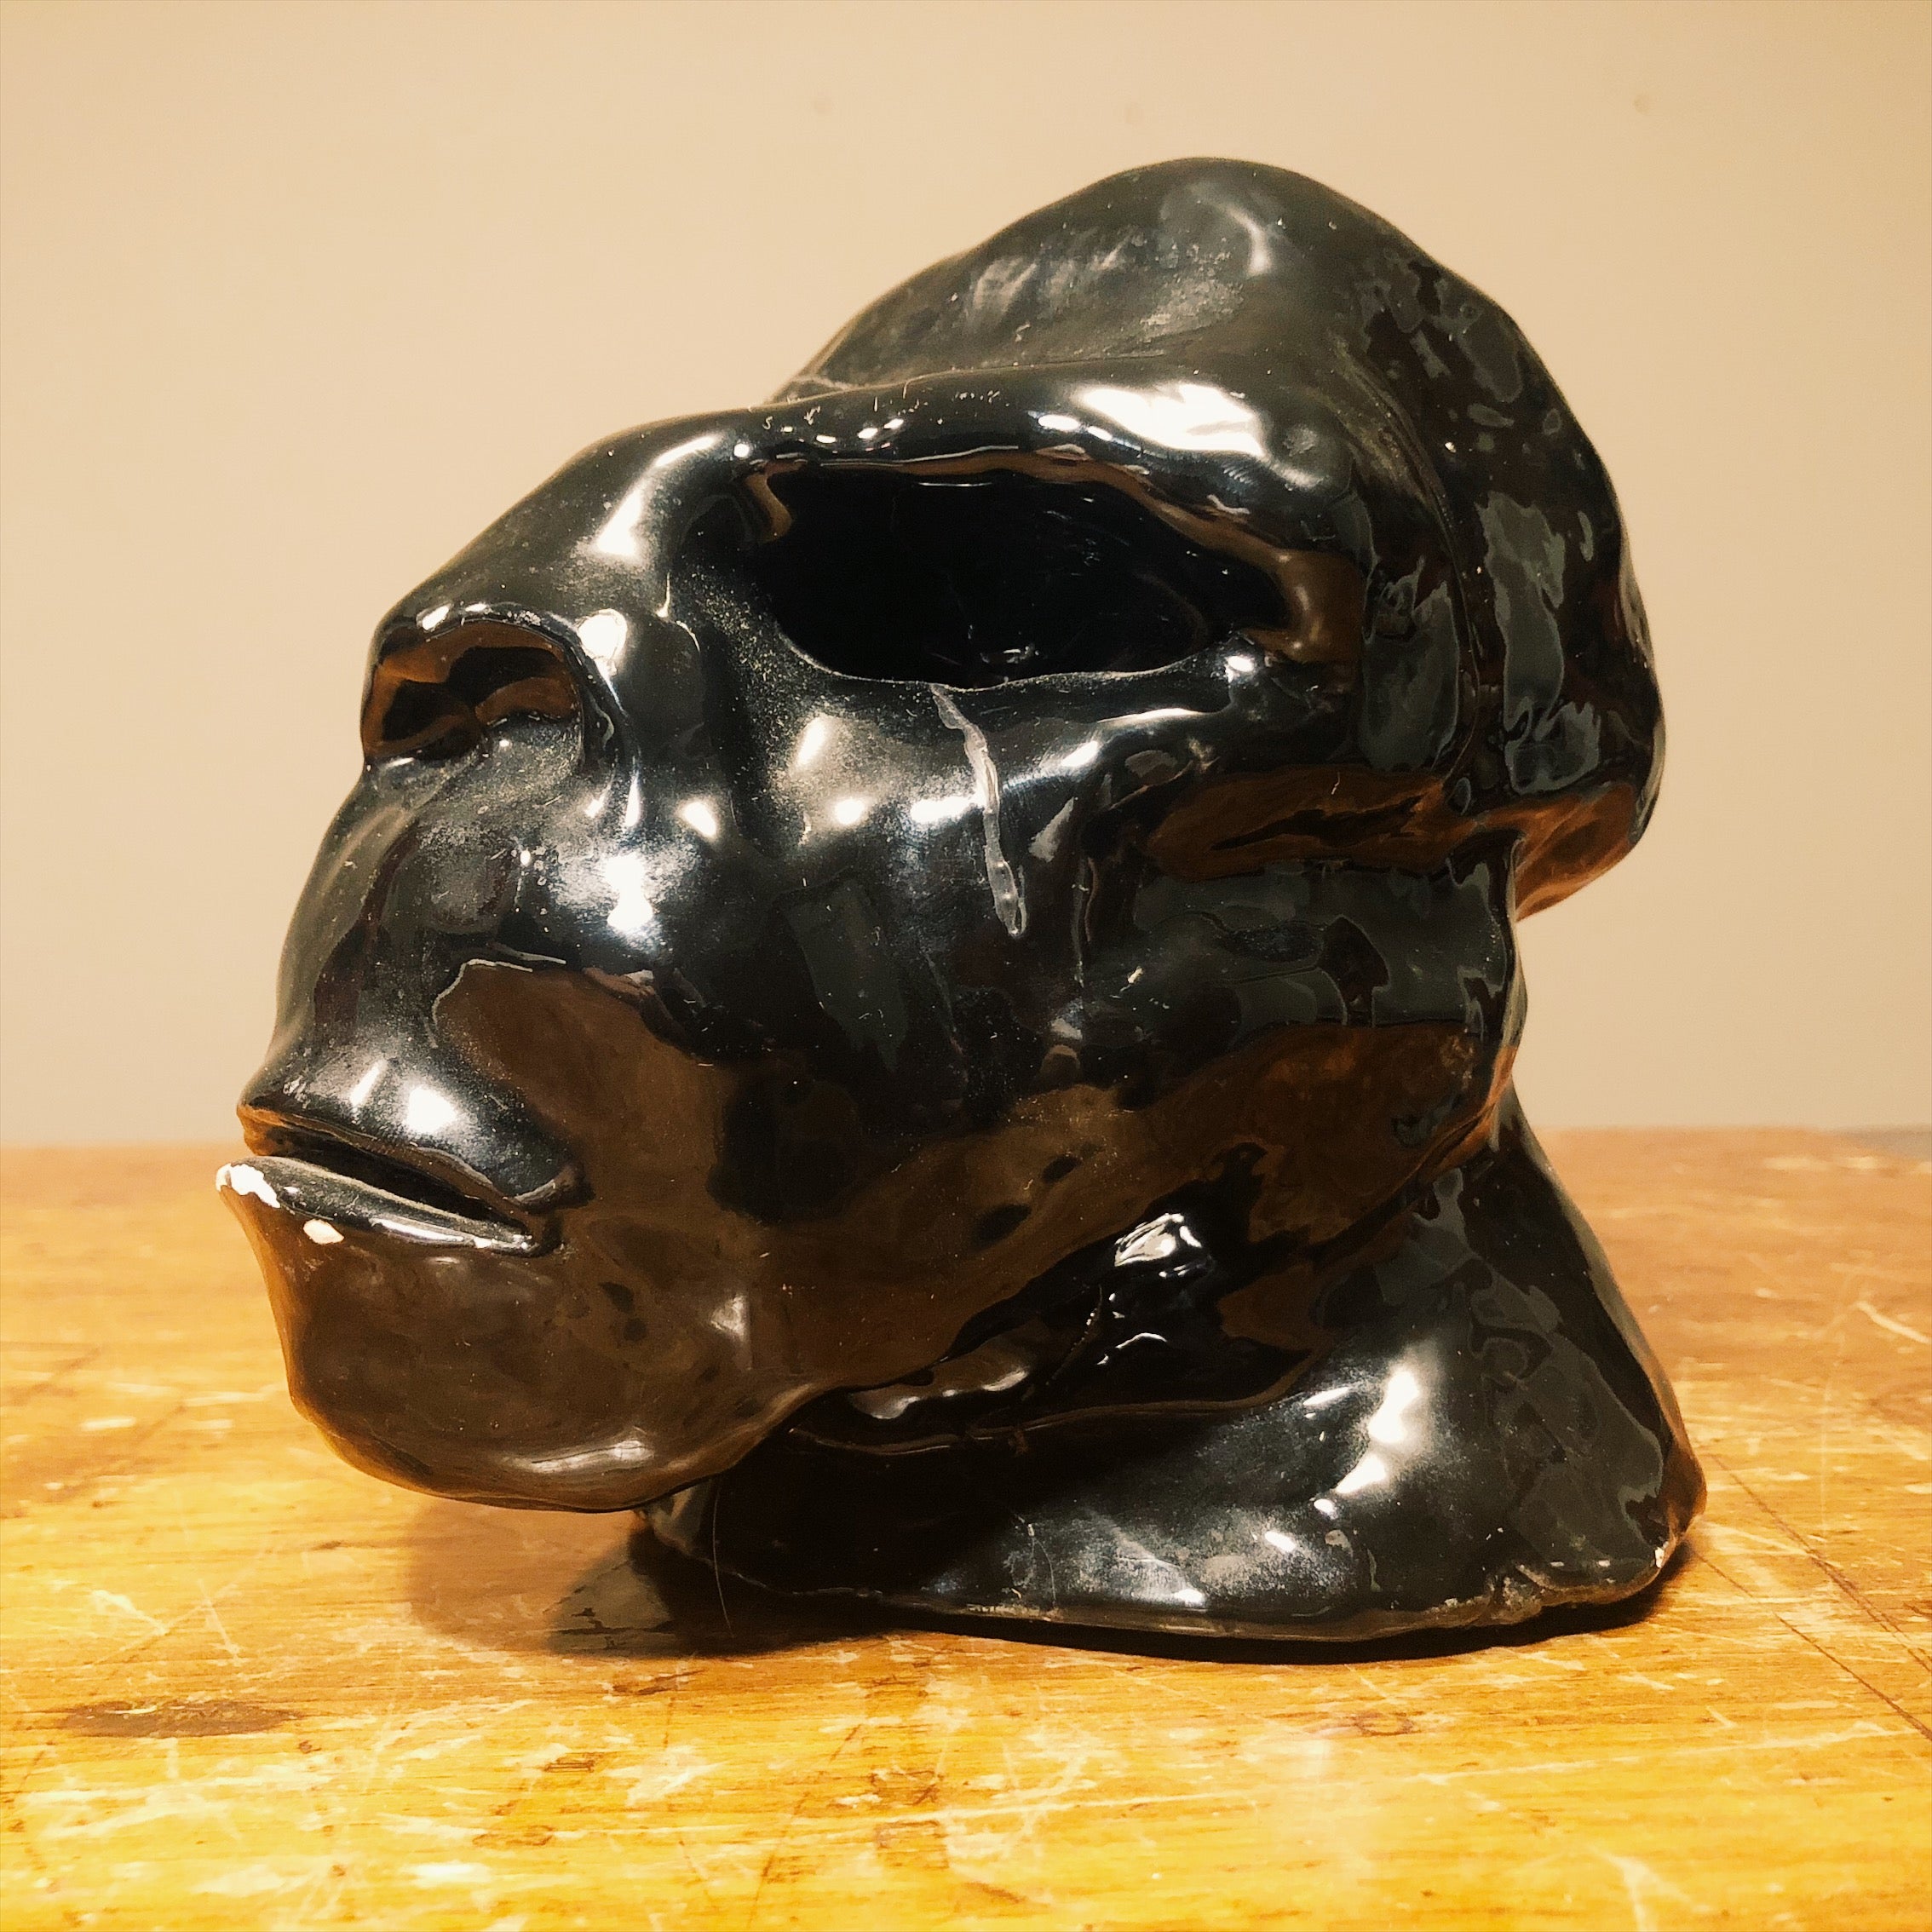 Vintage Gorilla Head Sculpture - Left Side